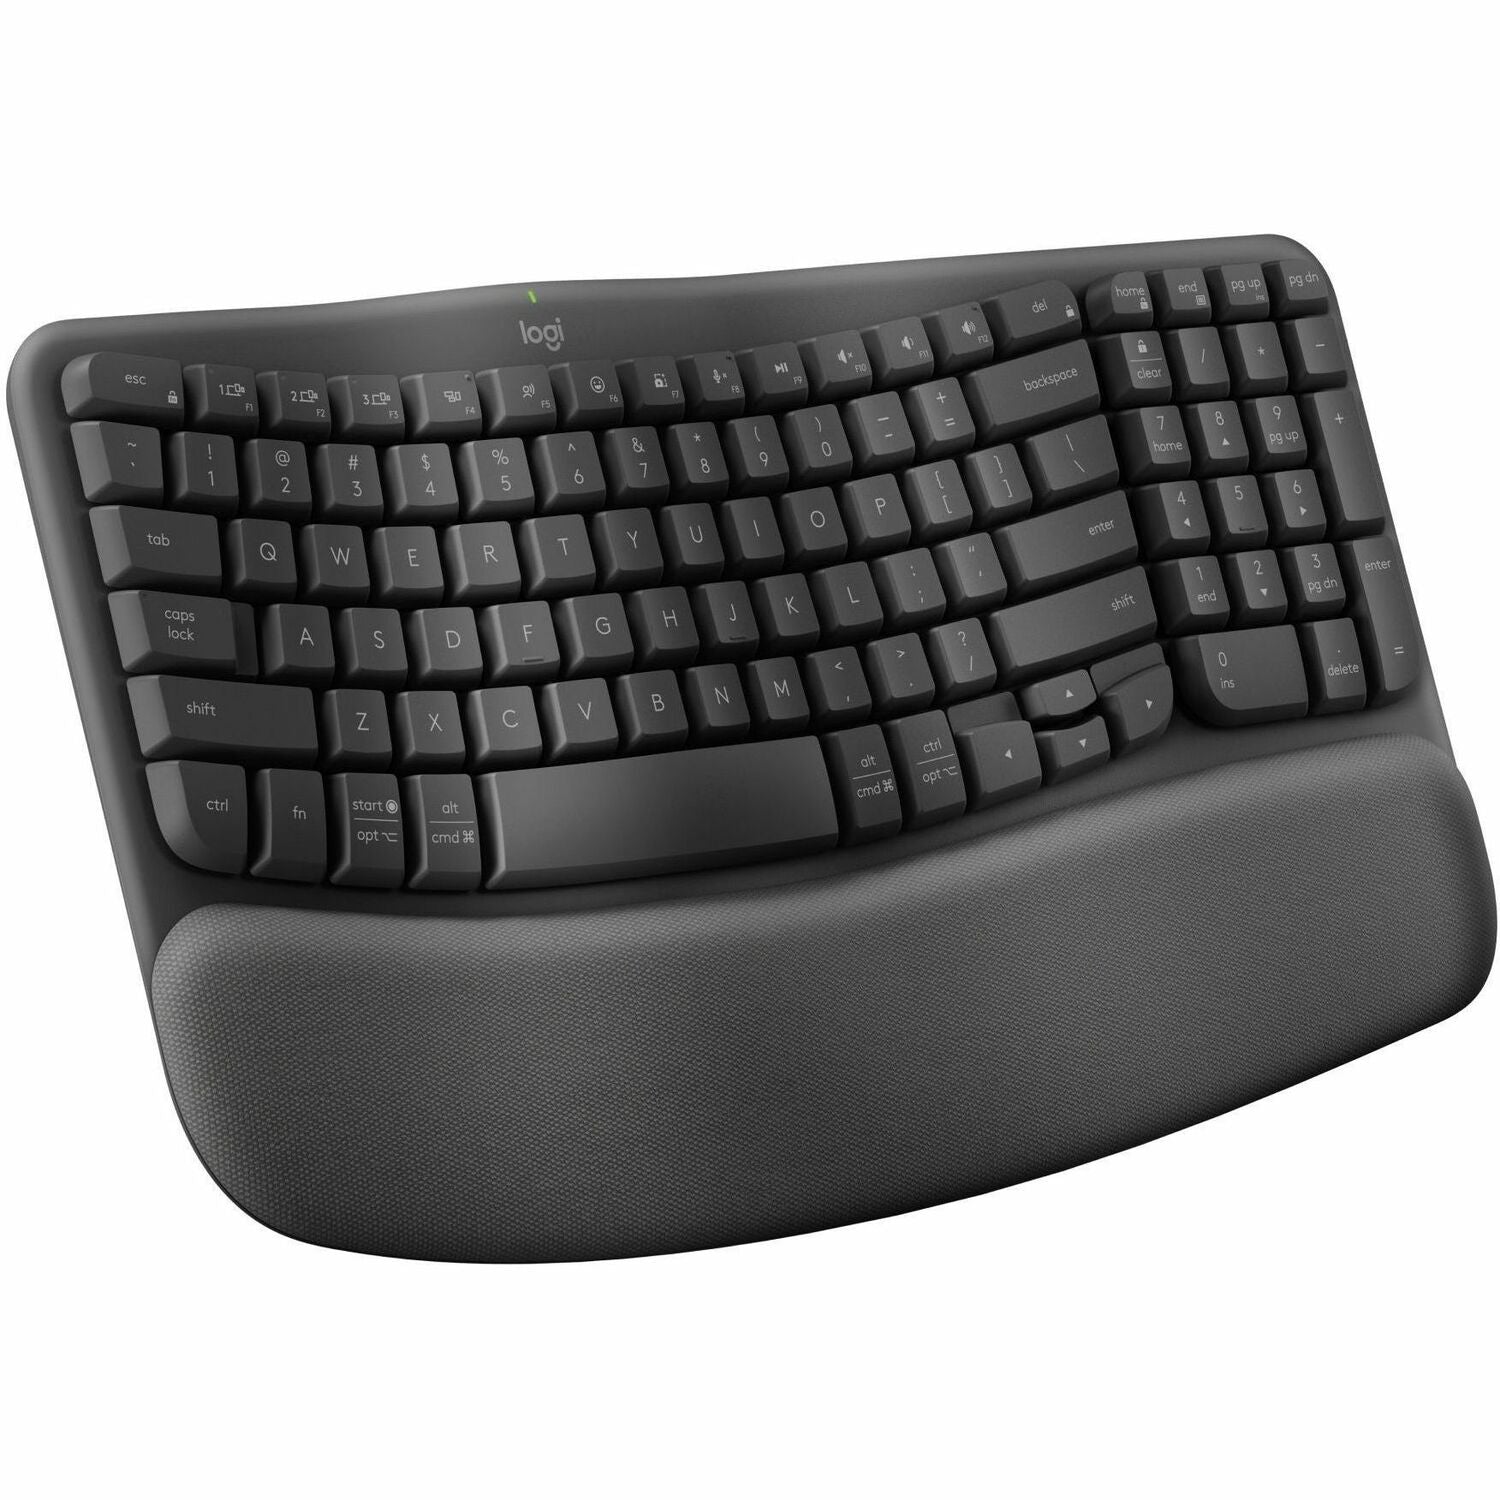 Logitech Wave Keys Keyboard - 920-011898